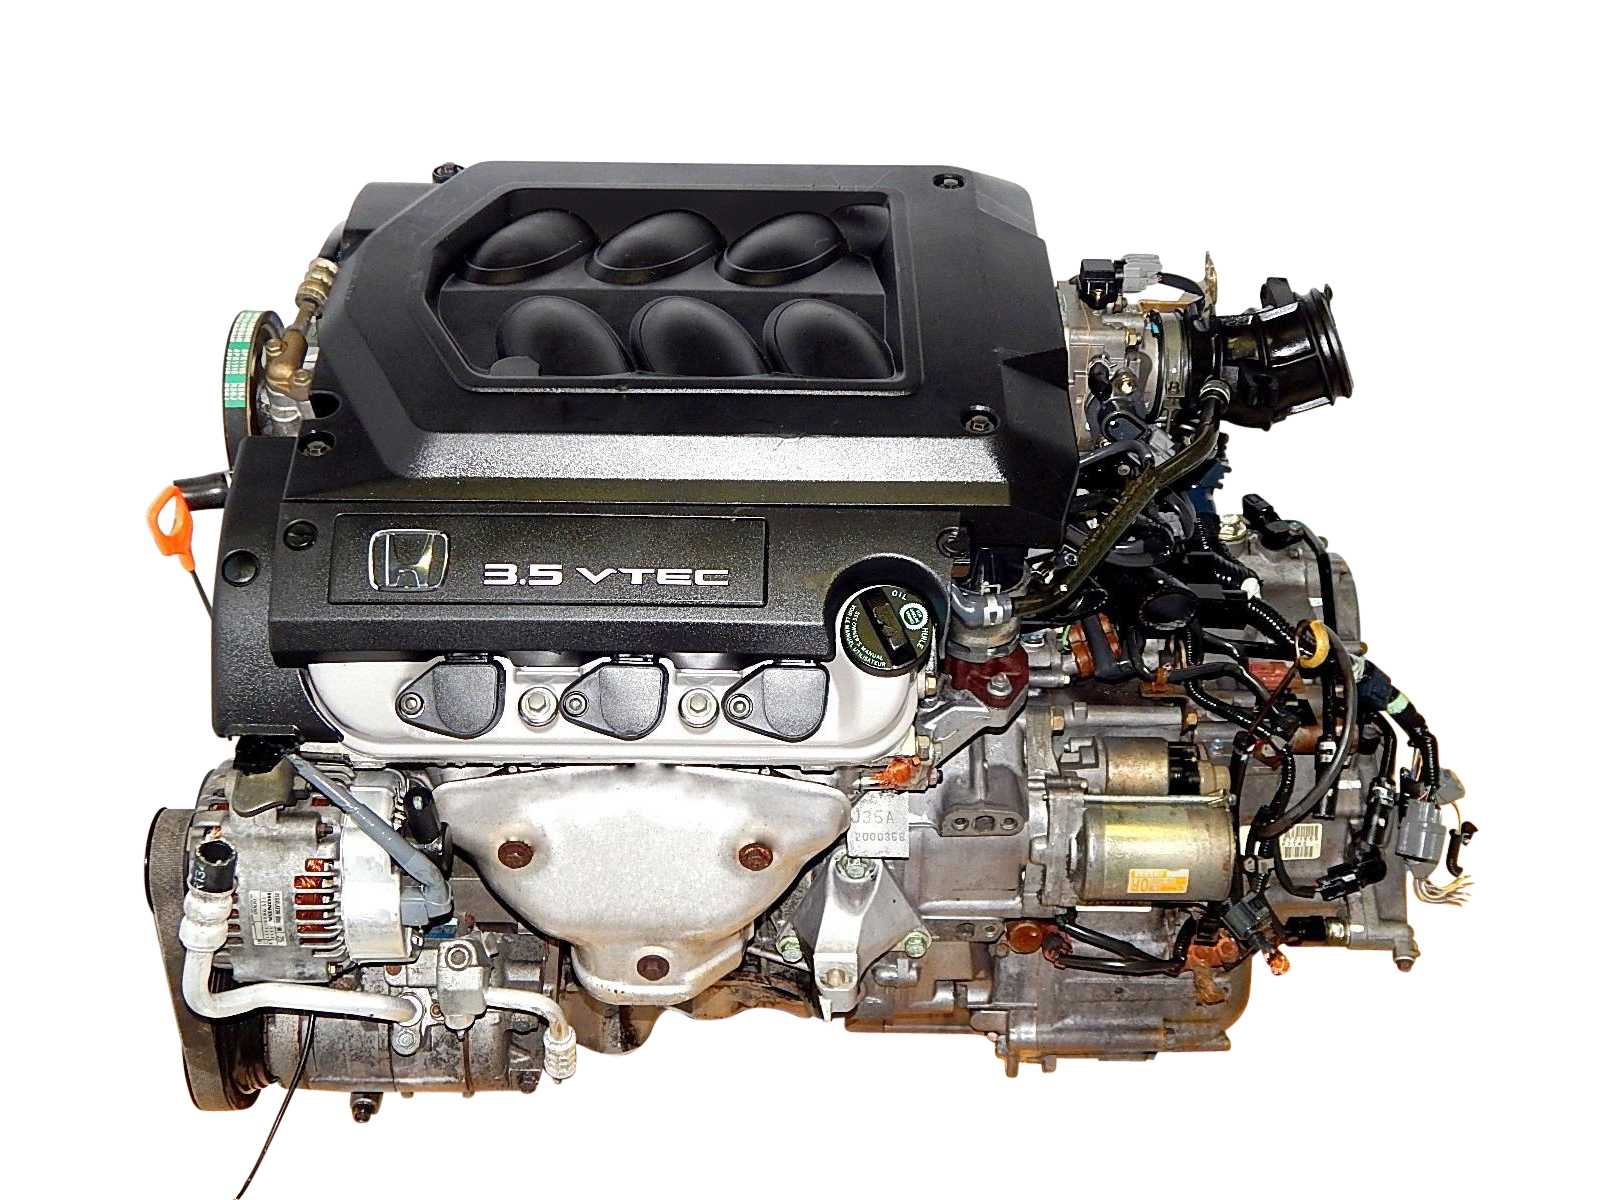 Купить двигатель v6. Двигатель Хонда Одиссей 3.5. Двигатель Хонда j35a. Мотор 3.5 Хонда j35a. Honda Elysion j35a двигатель.